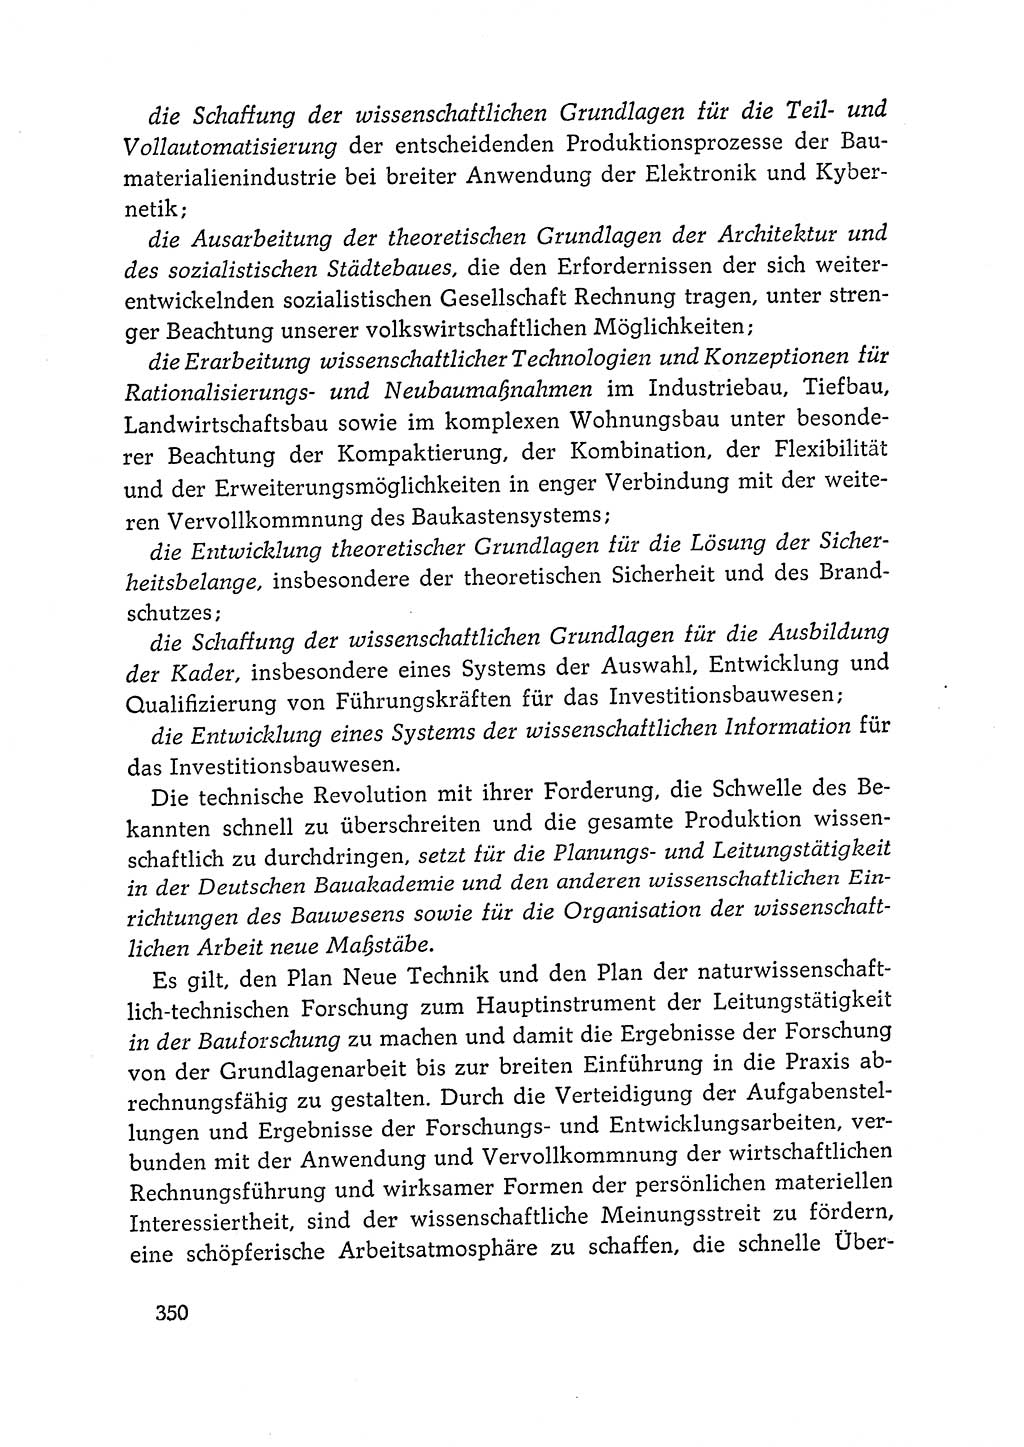 Dokumente der Sozialistischen Einheitspartei Deutschlands (SED) [Deutsche Demokratische Republik (DDR)] 1964-1965, Seite 352 (Dok. SED DDR 1964-1965, S. 352)